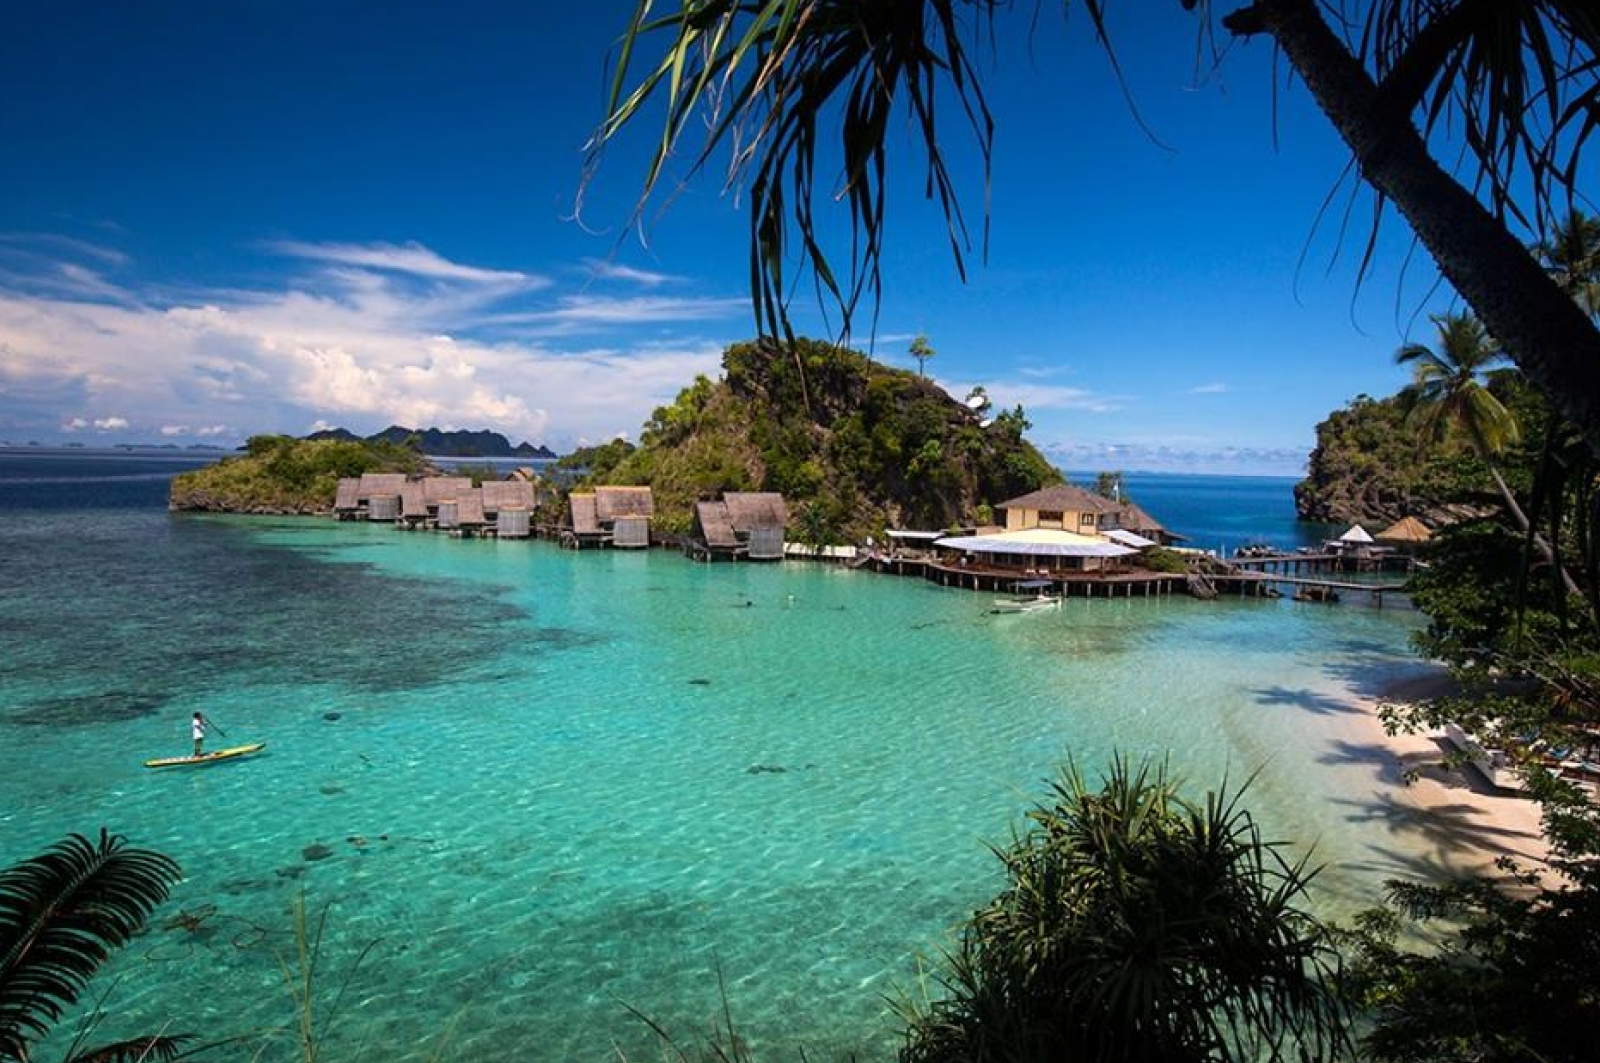 Raja Ampat Islands, Indonesia | Gokayu, Your Travel Guide